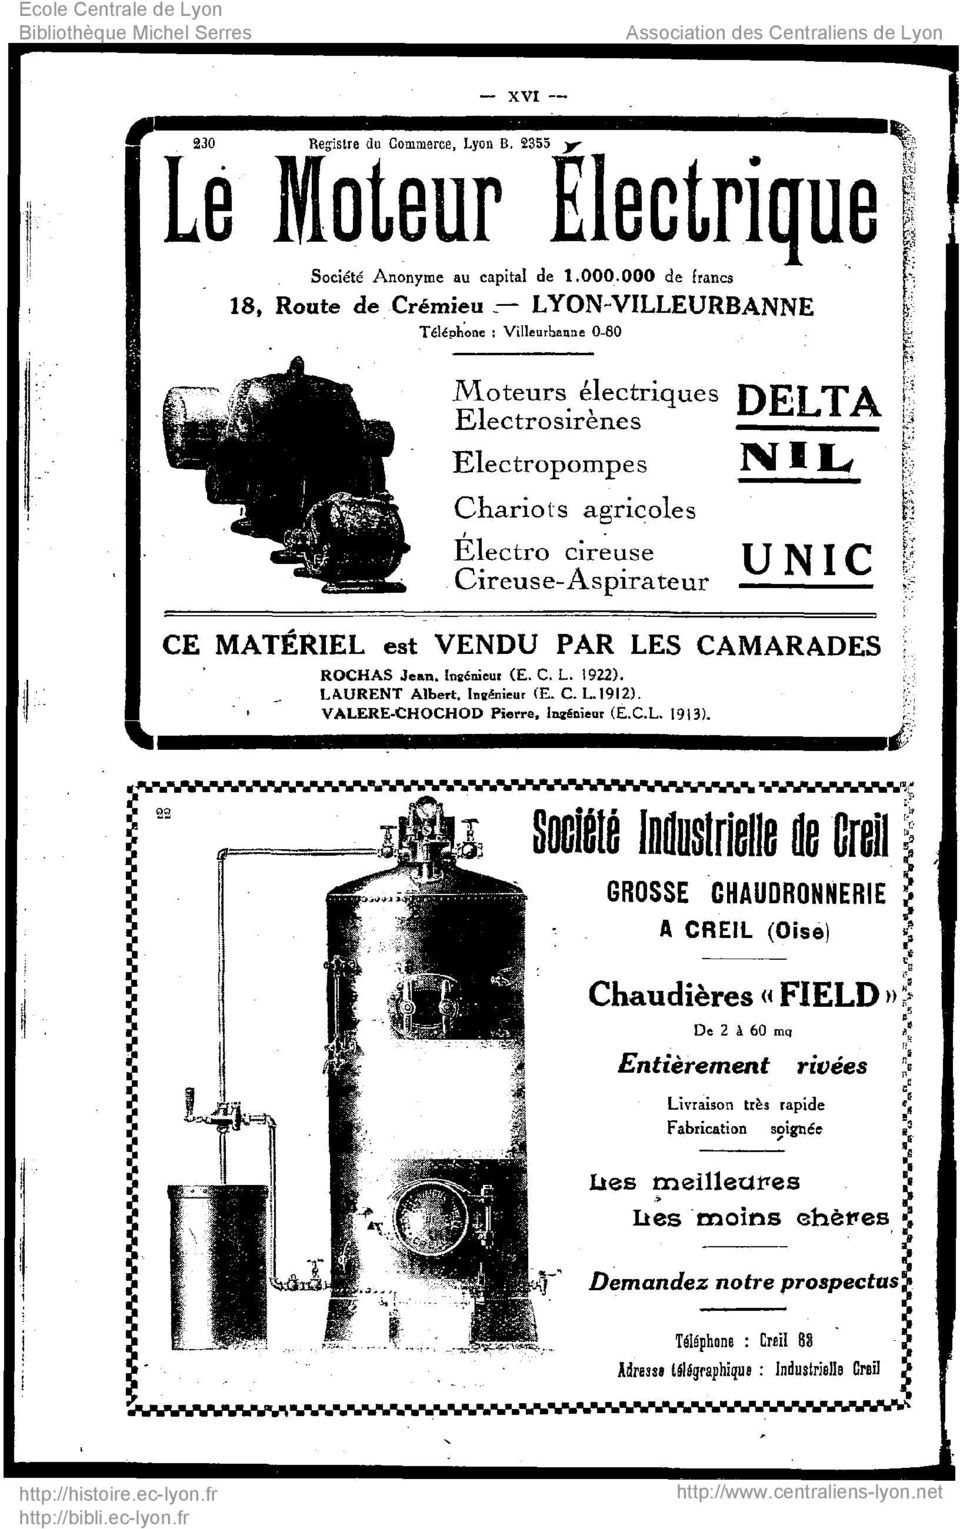 Cireuse-Aspirateur IVII^ UNIC CE MATERIEL est VENDU PAR LES CAMARADES ROCHAS Jean. Ingénieur (E. C. L. 1922). LAURENT Albert. Ingénieur (E. C. L..19I2). VALERE-CHOCHOD Pierre, Ingénieur (È.C.L. 1913).